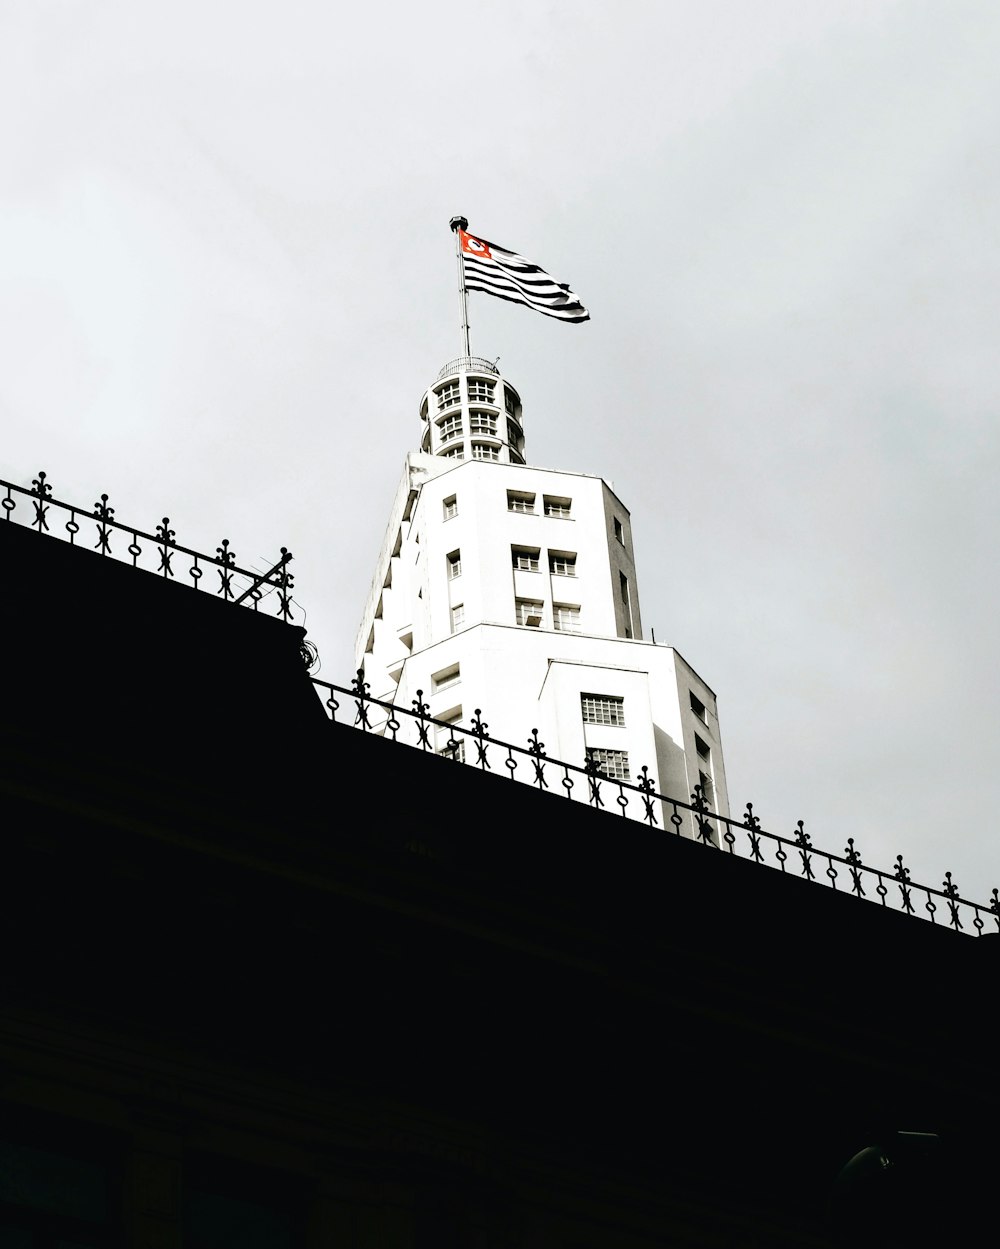 흰색 건물 위에 있는 미국 깃발